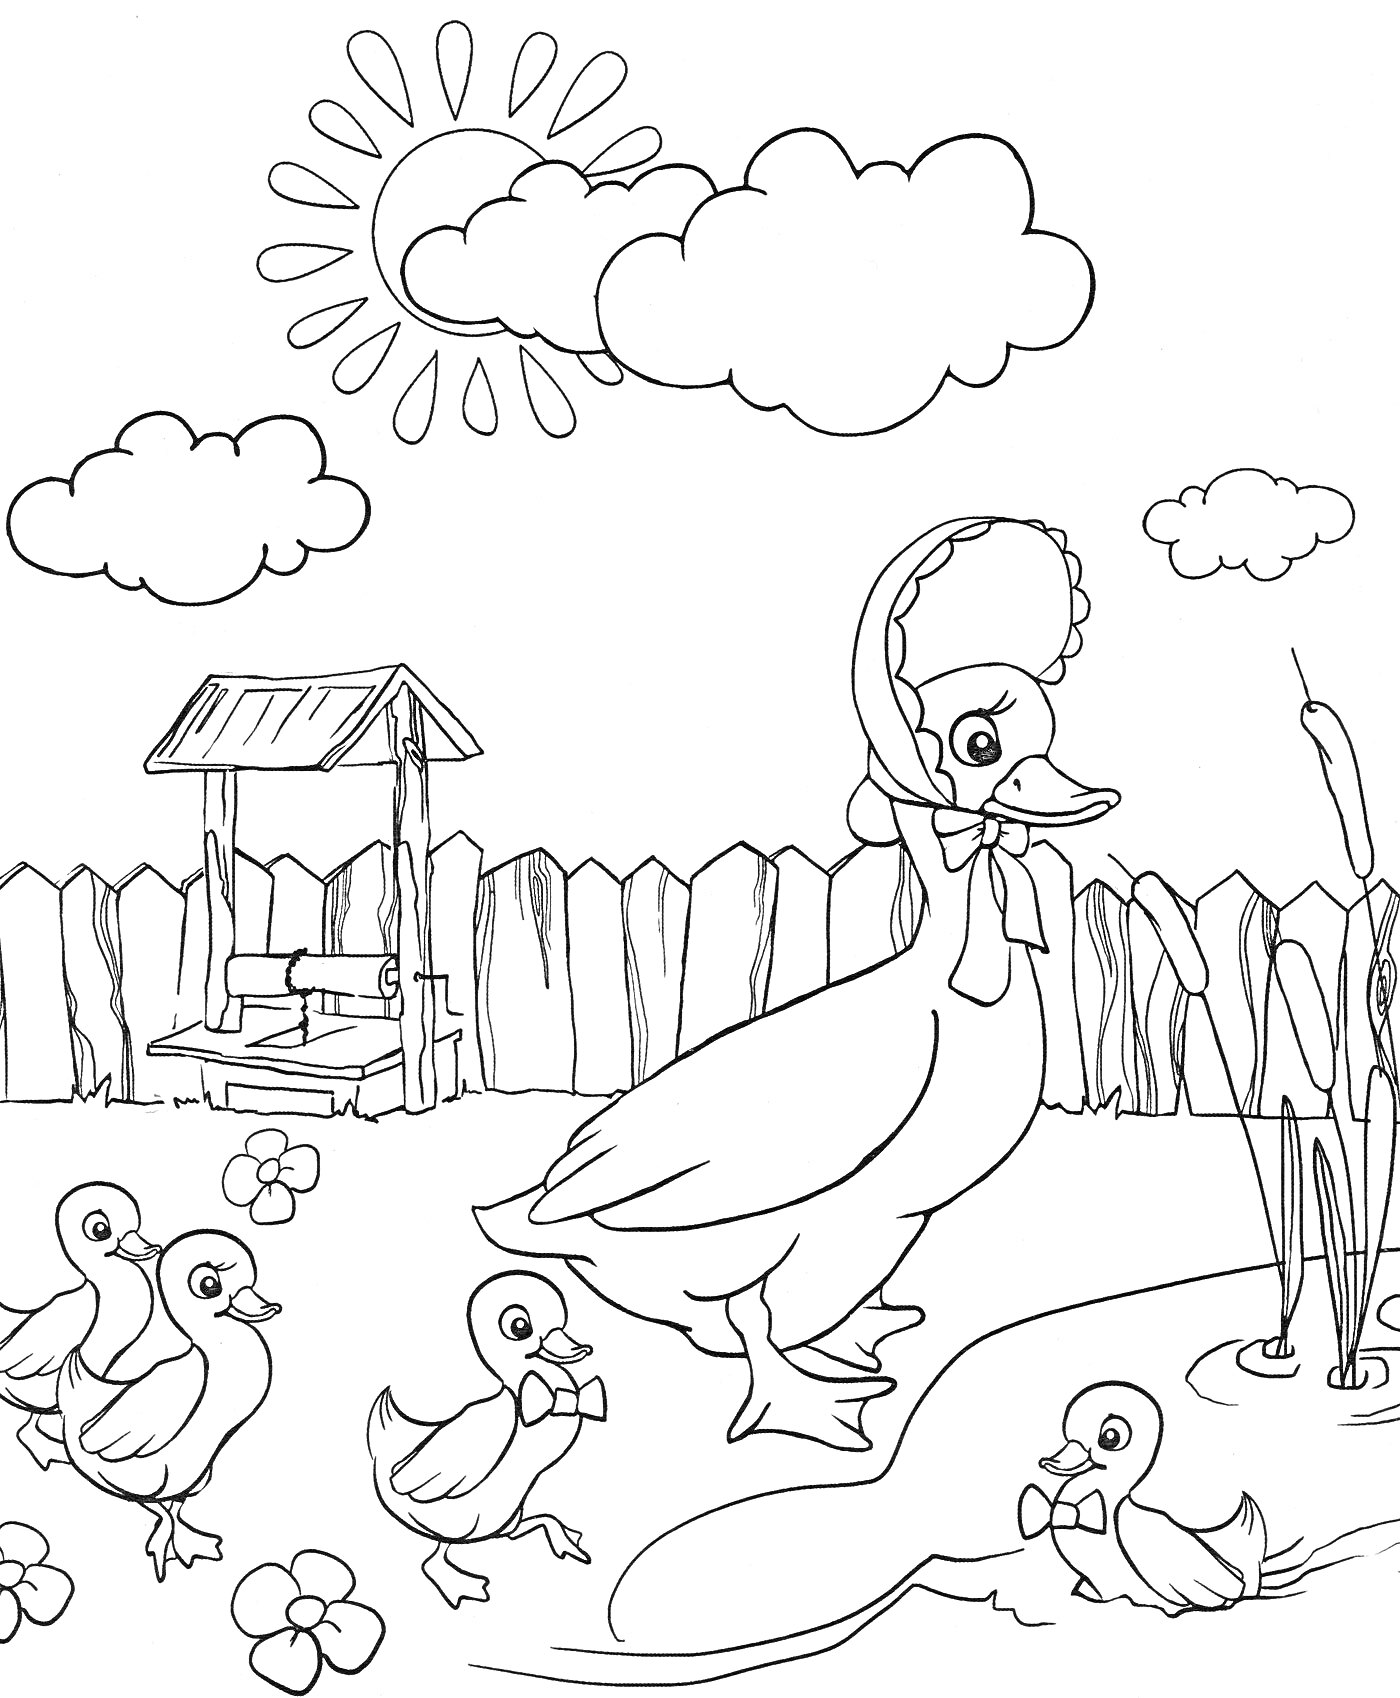 Раскраска Утка с утятами у пруда с домиком и забором на заднем плане